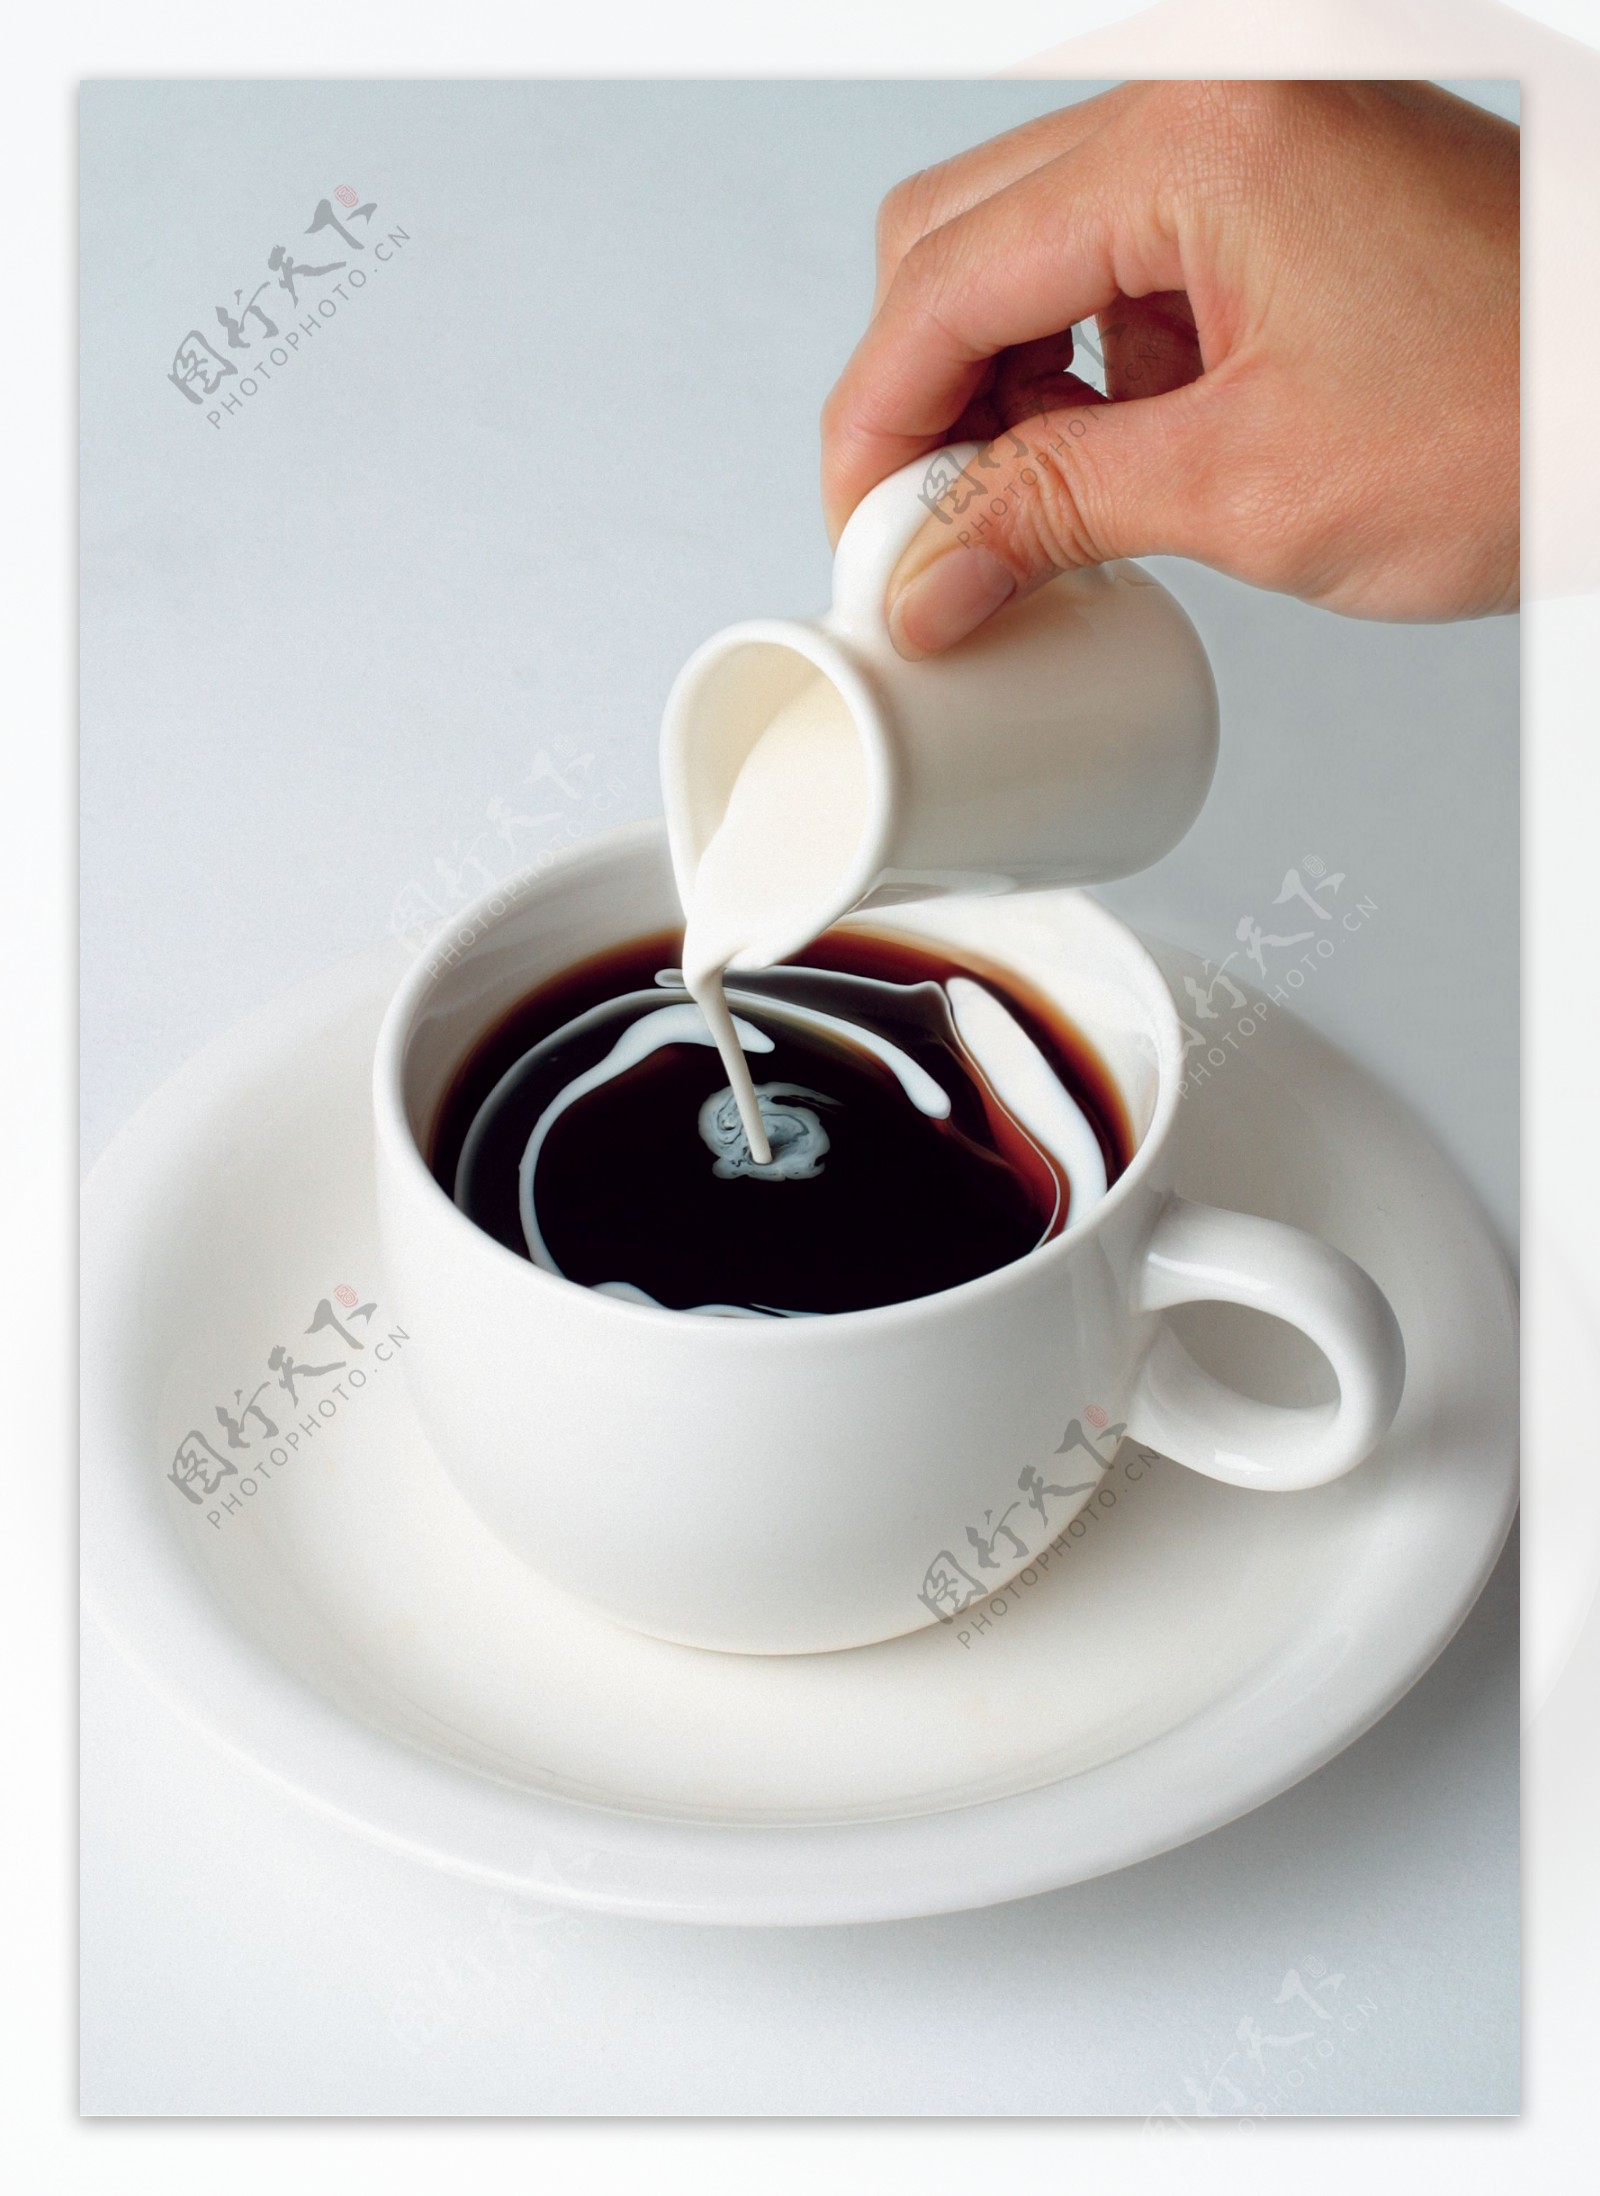 牛奶咖啡图片